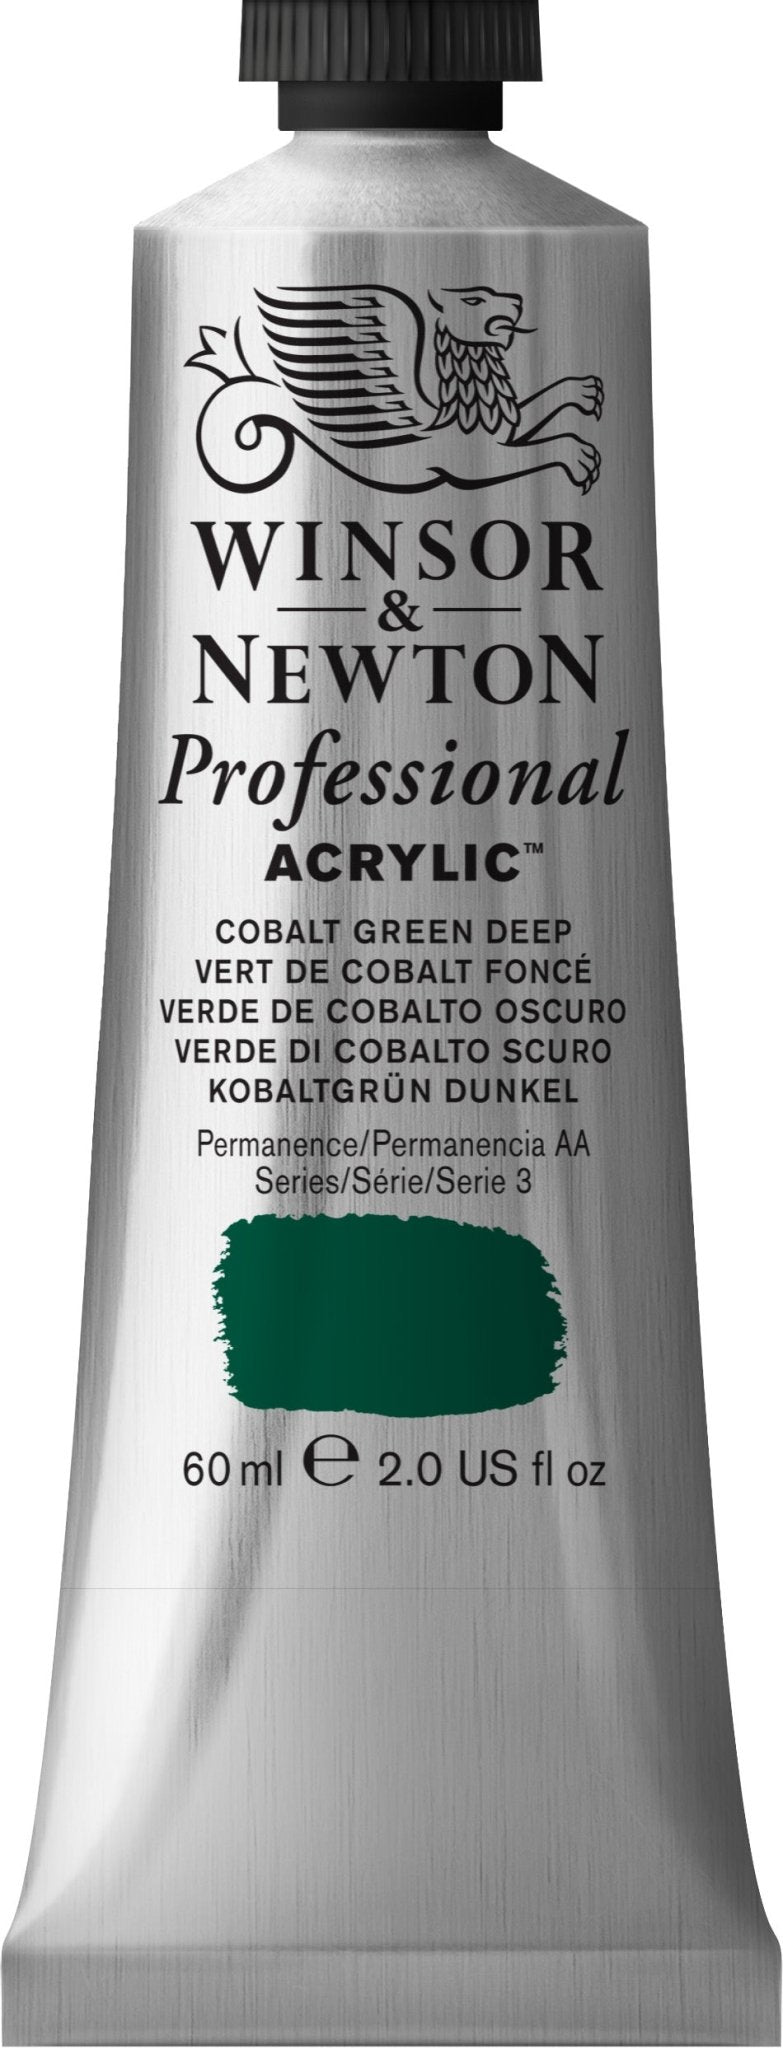 W & N Professional Acrylic 60ml Cobalt Green Deep - theartshop.com.au